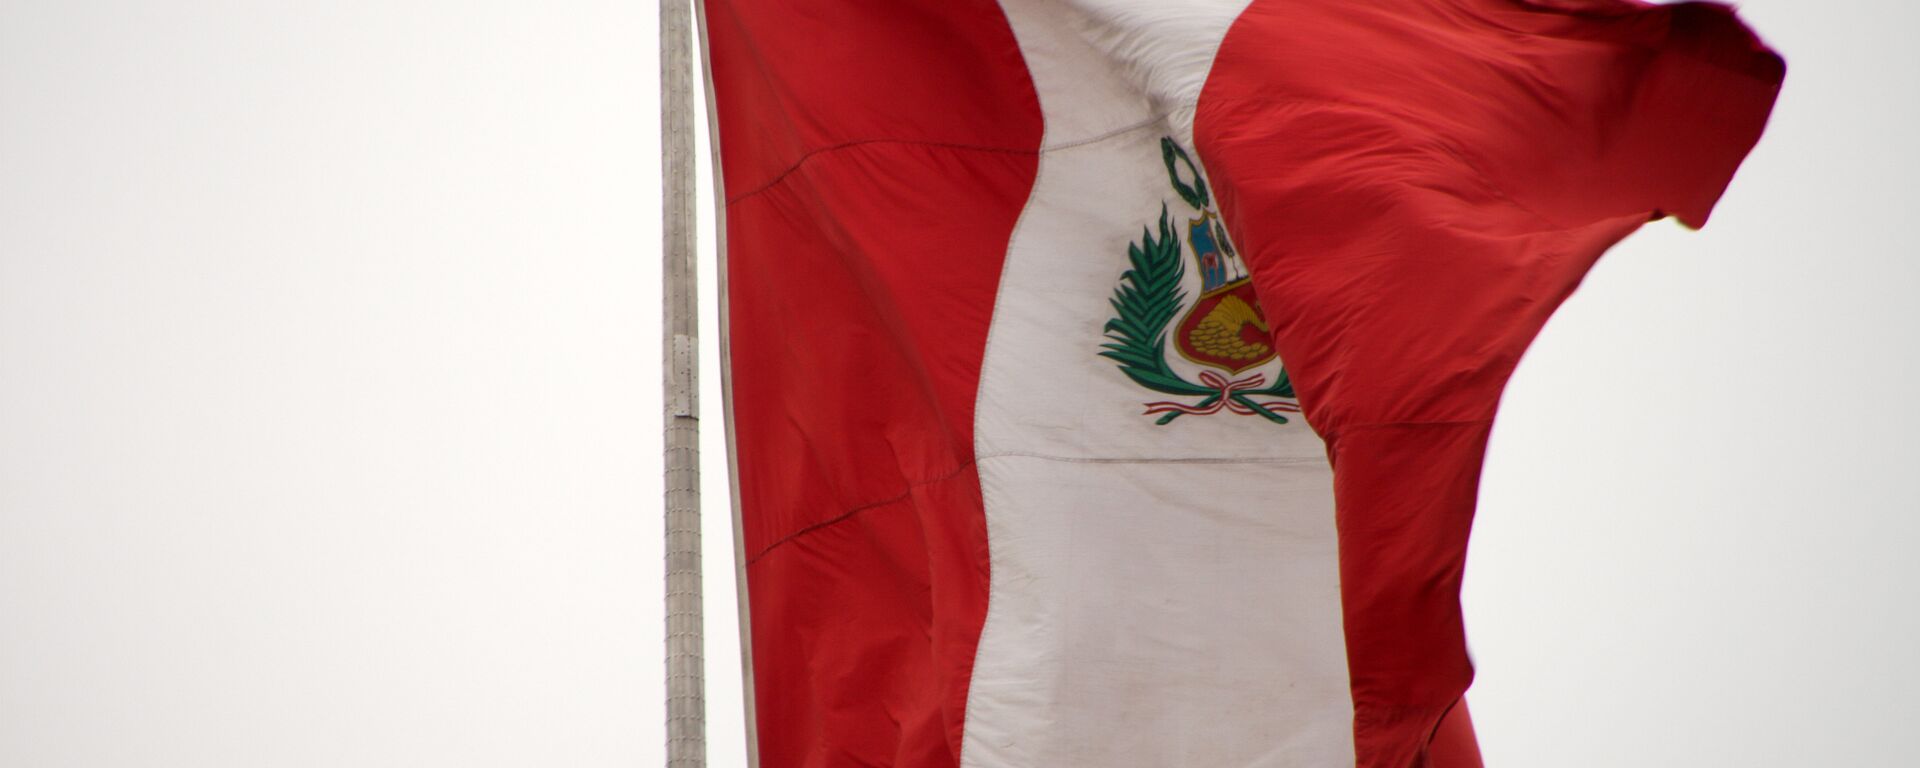 La bandera de Perú - Sputnik Mundo, 1920, 07.01.2021